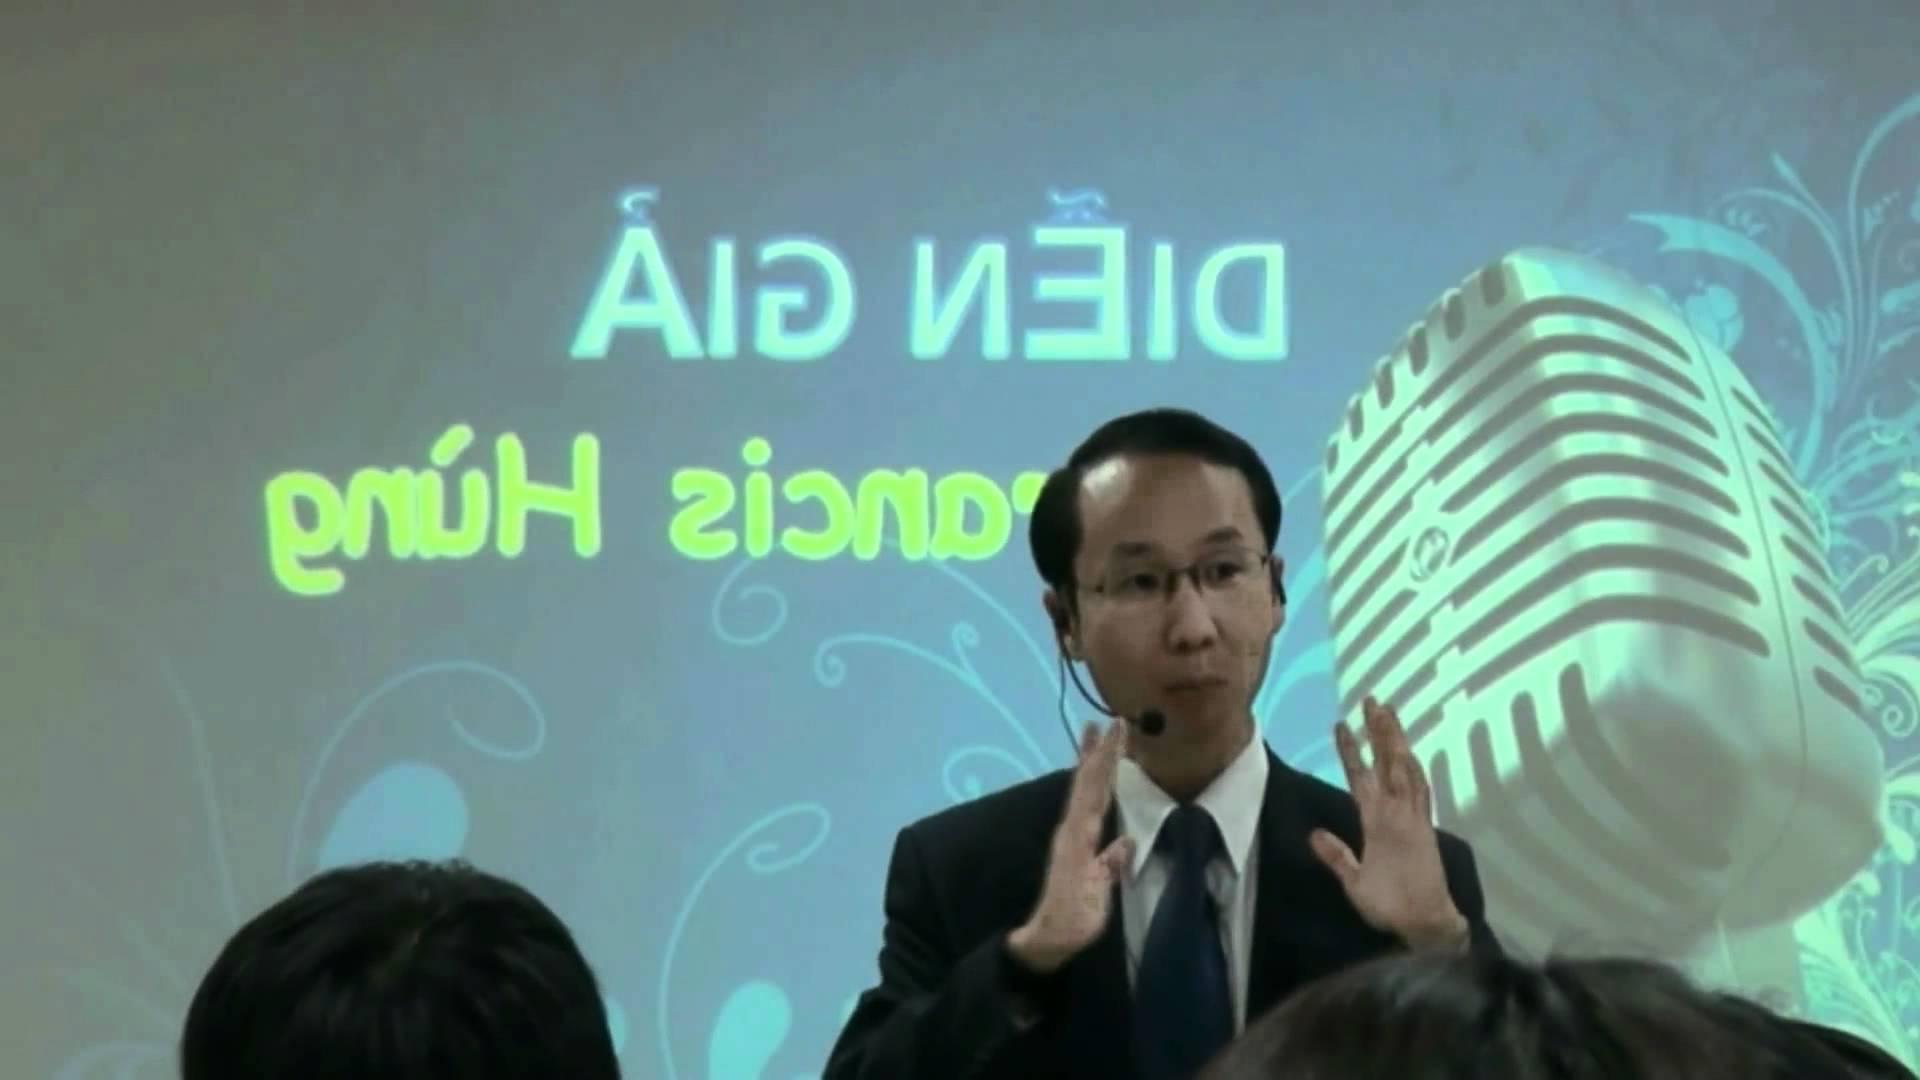 Diễn giả Francis Hùng trong một buổi diễn thuyết